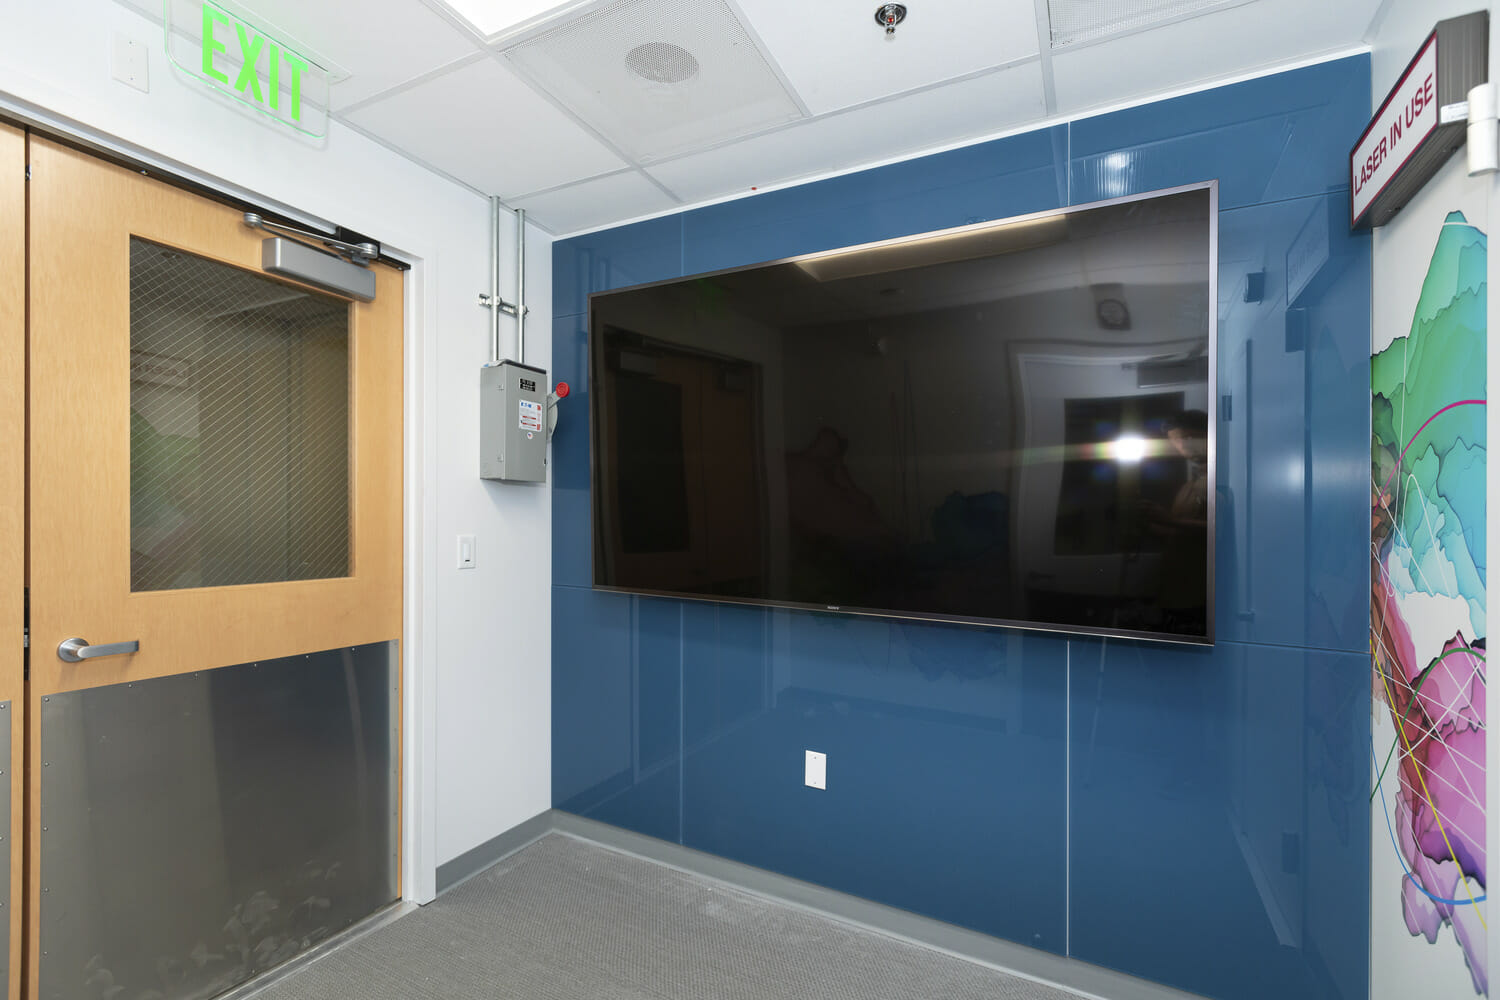 Un couloir avec une télé et une porte.